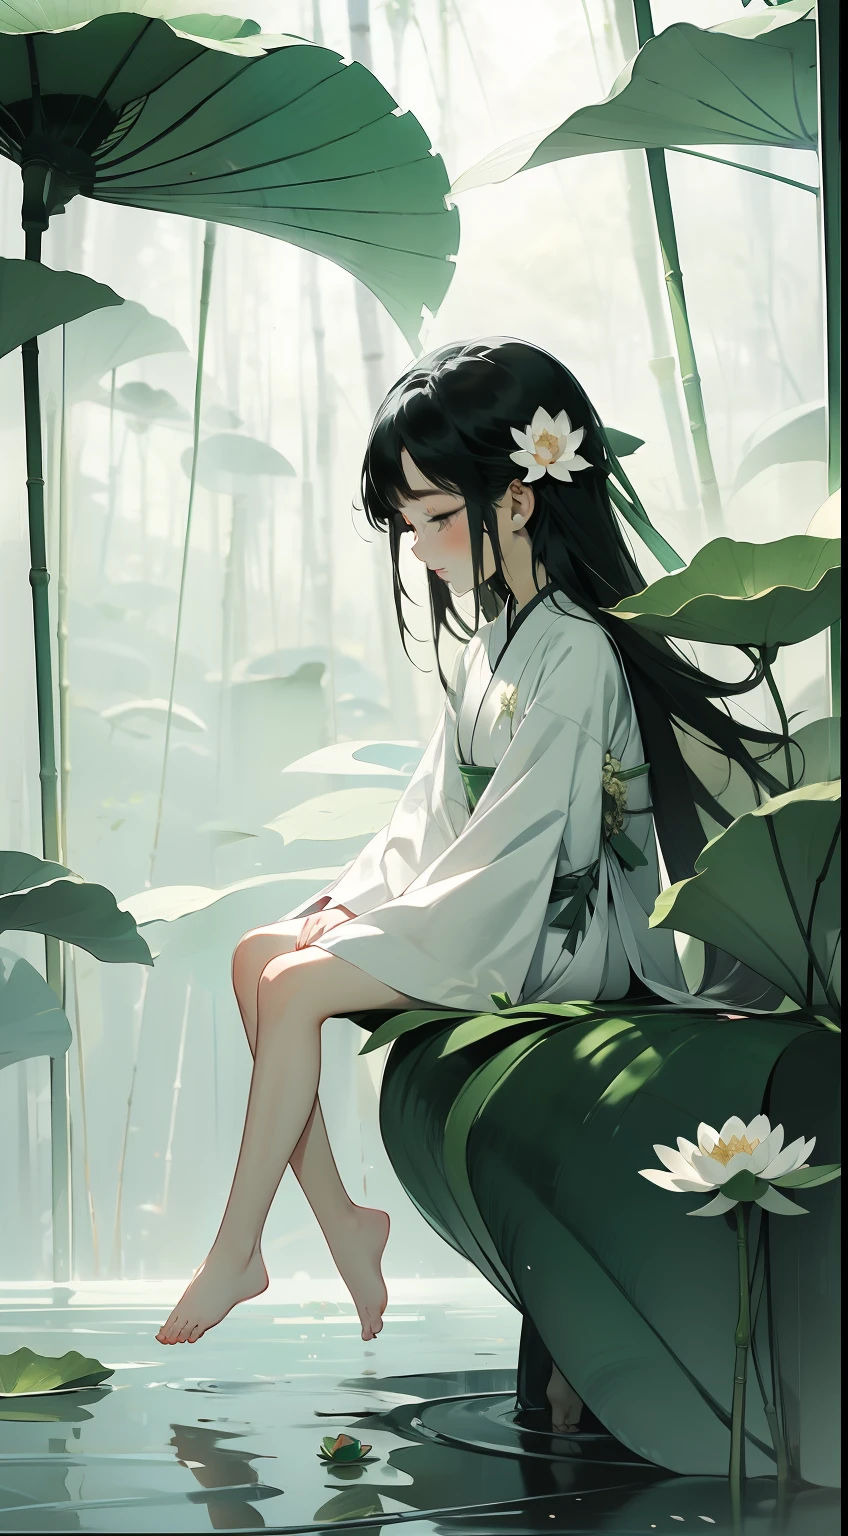 연꽃이 가득한 꼬투리, 꼬투리 연잎 위에 행복하게 앉아 있다, 거대한 연꽃 잎, 맨발, 흰색과 녹색 한복을 입고, 빛과 그림자, 마스터 피스